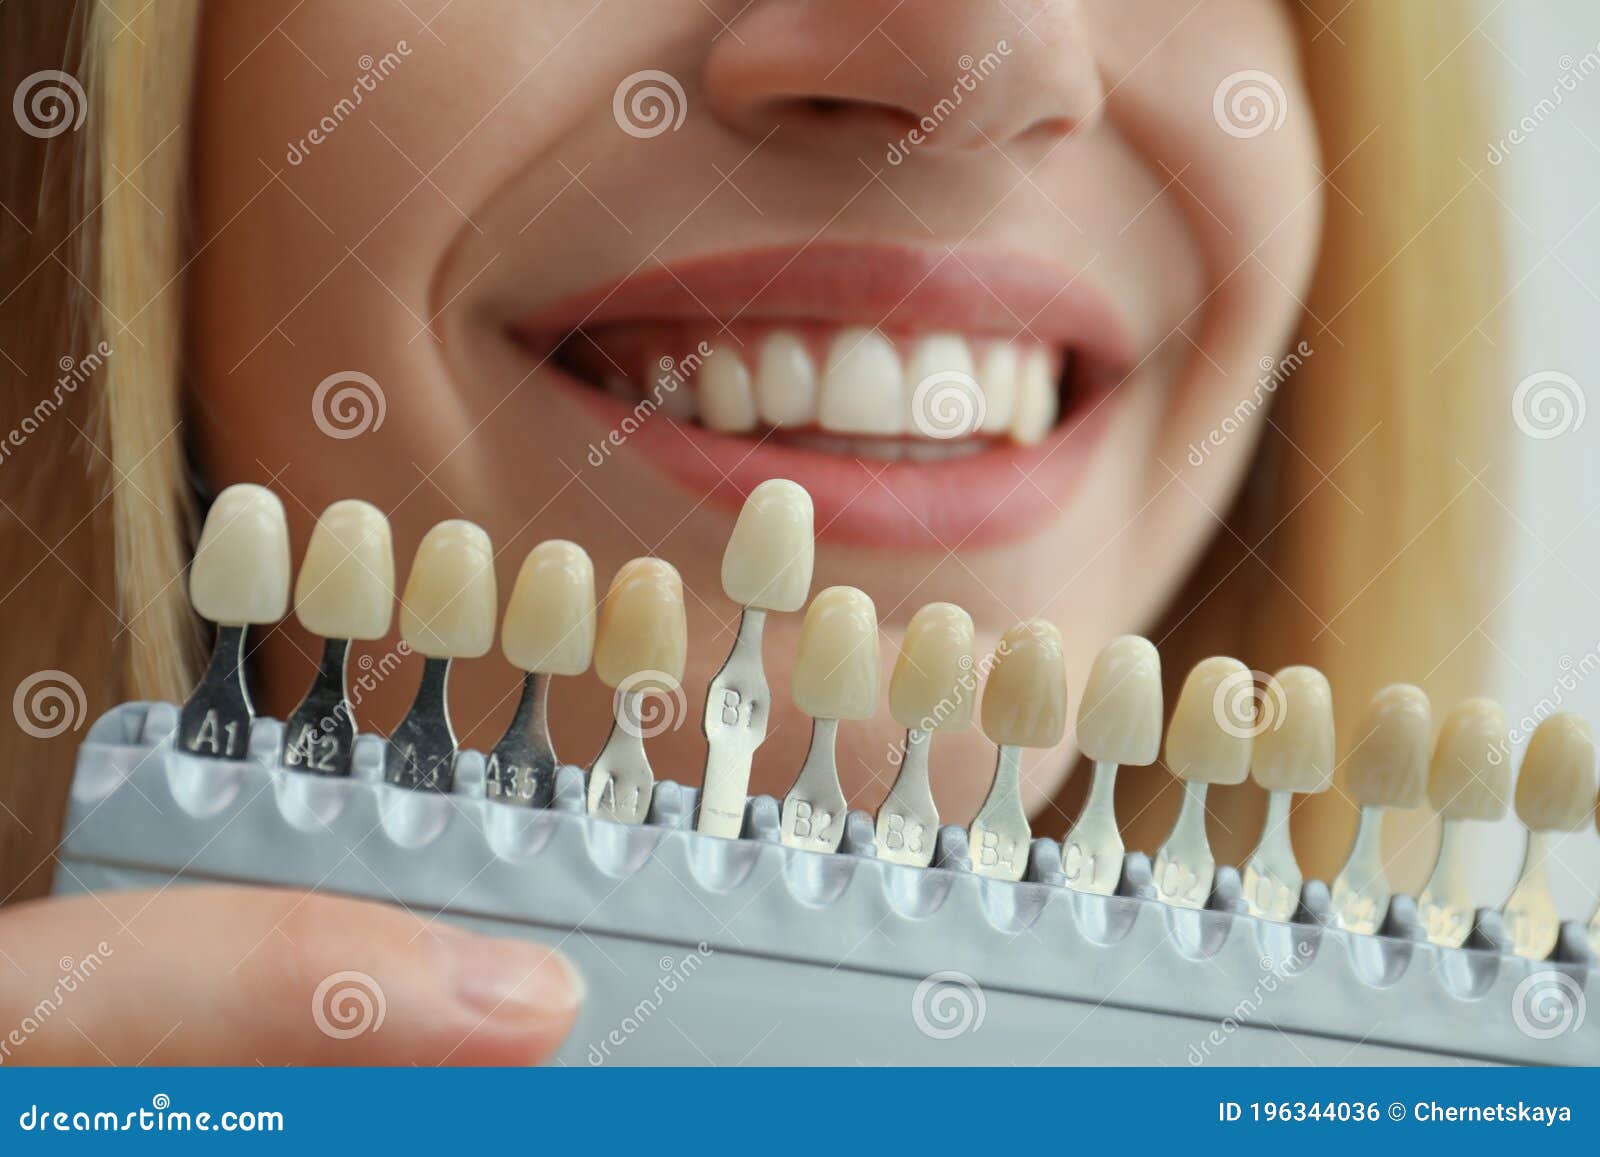 Die Tanden Aanpast Kleur Met Paletcloseup. Cosmetische Tandheelkunde Stock Foto - Image of licht, kleur: 196344036